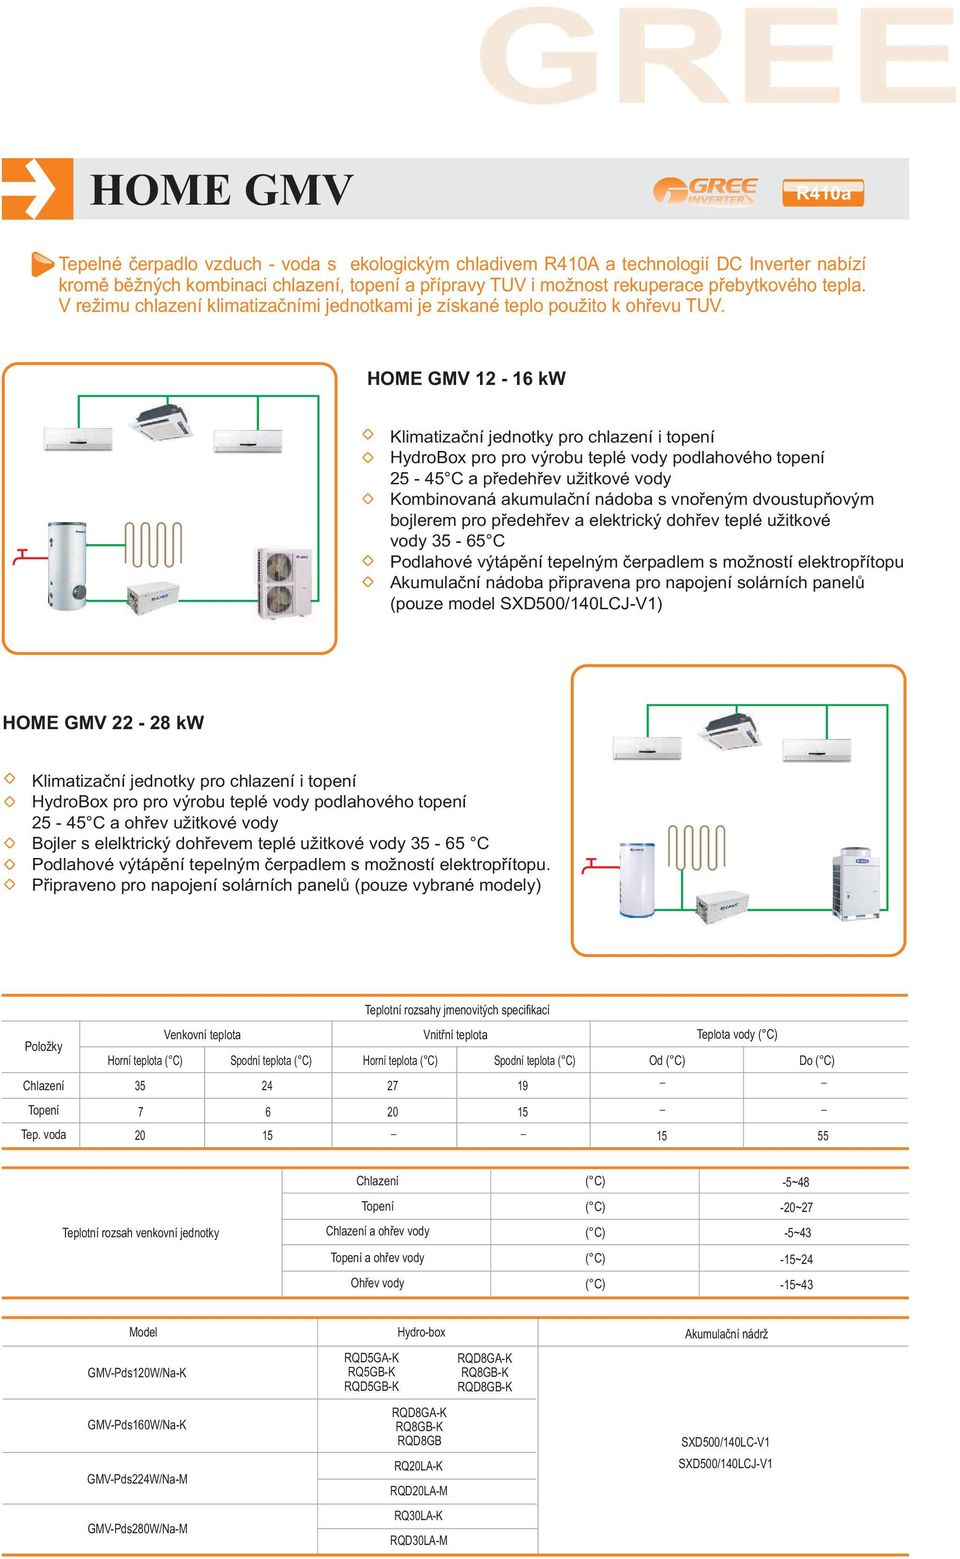 HOME GMV 2 6 Klimatizační jednotky pro chlazení i topení HydroBox pro pro výrobu teplé vody podlahového topení 25 45 a předehřev užitkové vody Kombinovaná akumulační nádoba s vnořeným dvoustupňovým